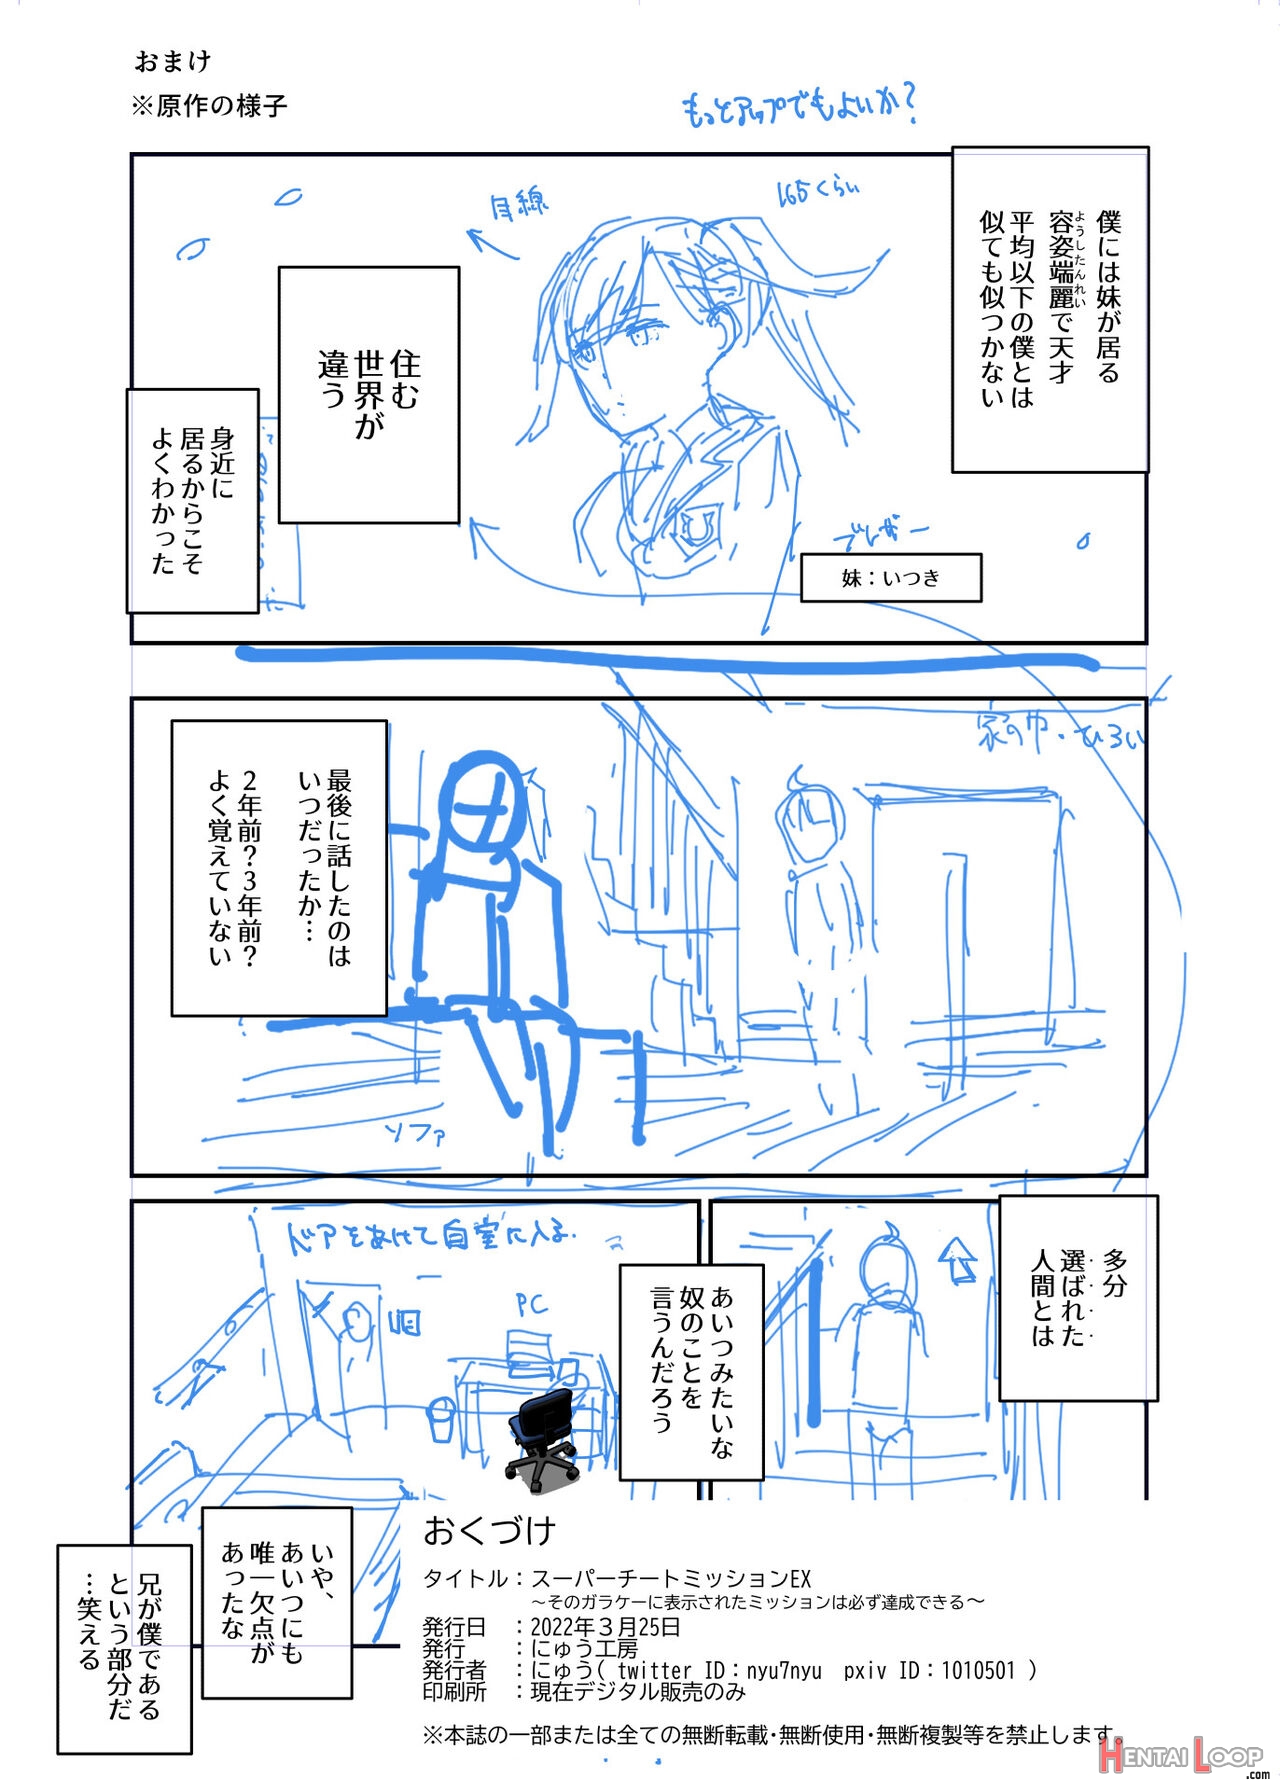 Super Cheat Mission Ex Sono Garake Ni Hyouji Sareta Mission Wa Kanarazu Tassei Dekiru page 47